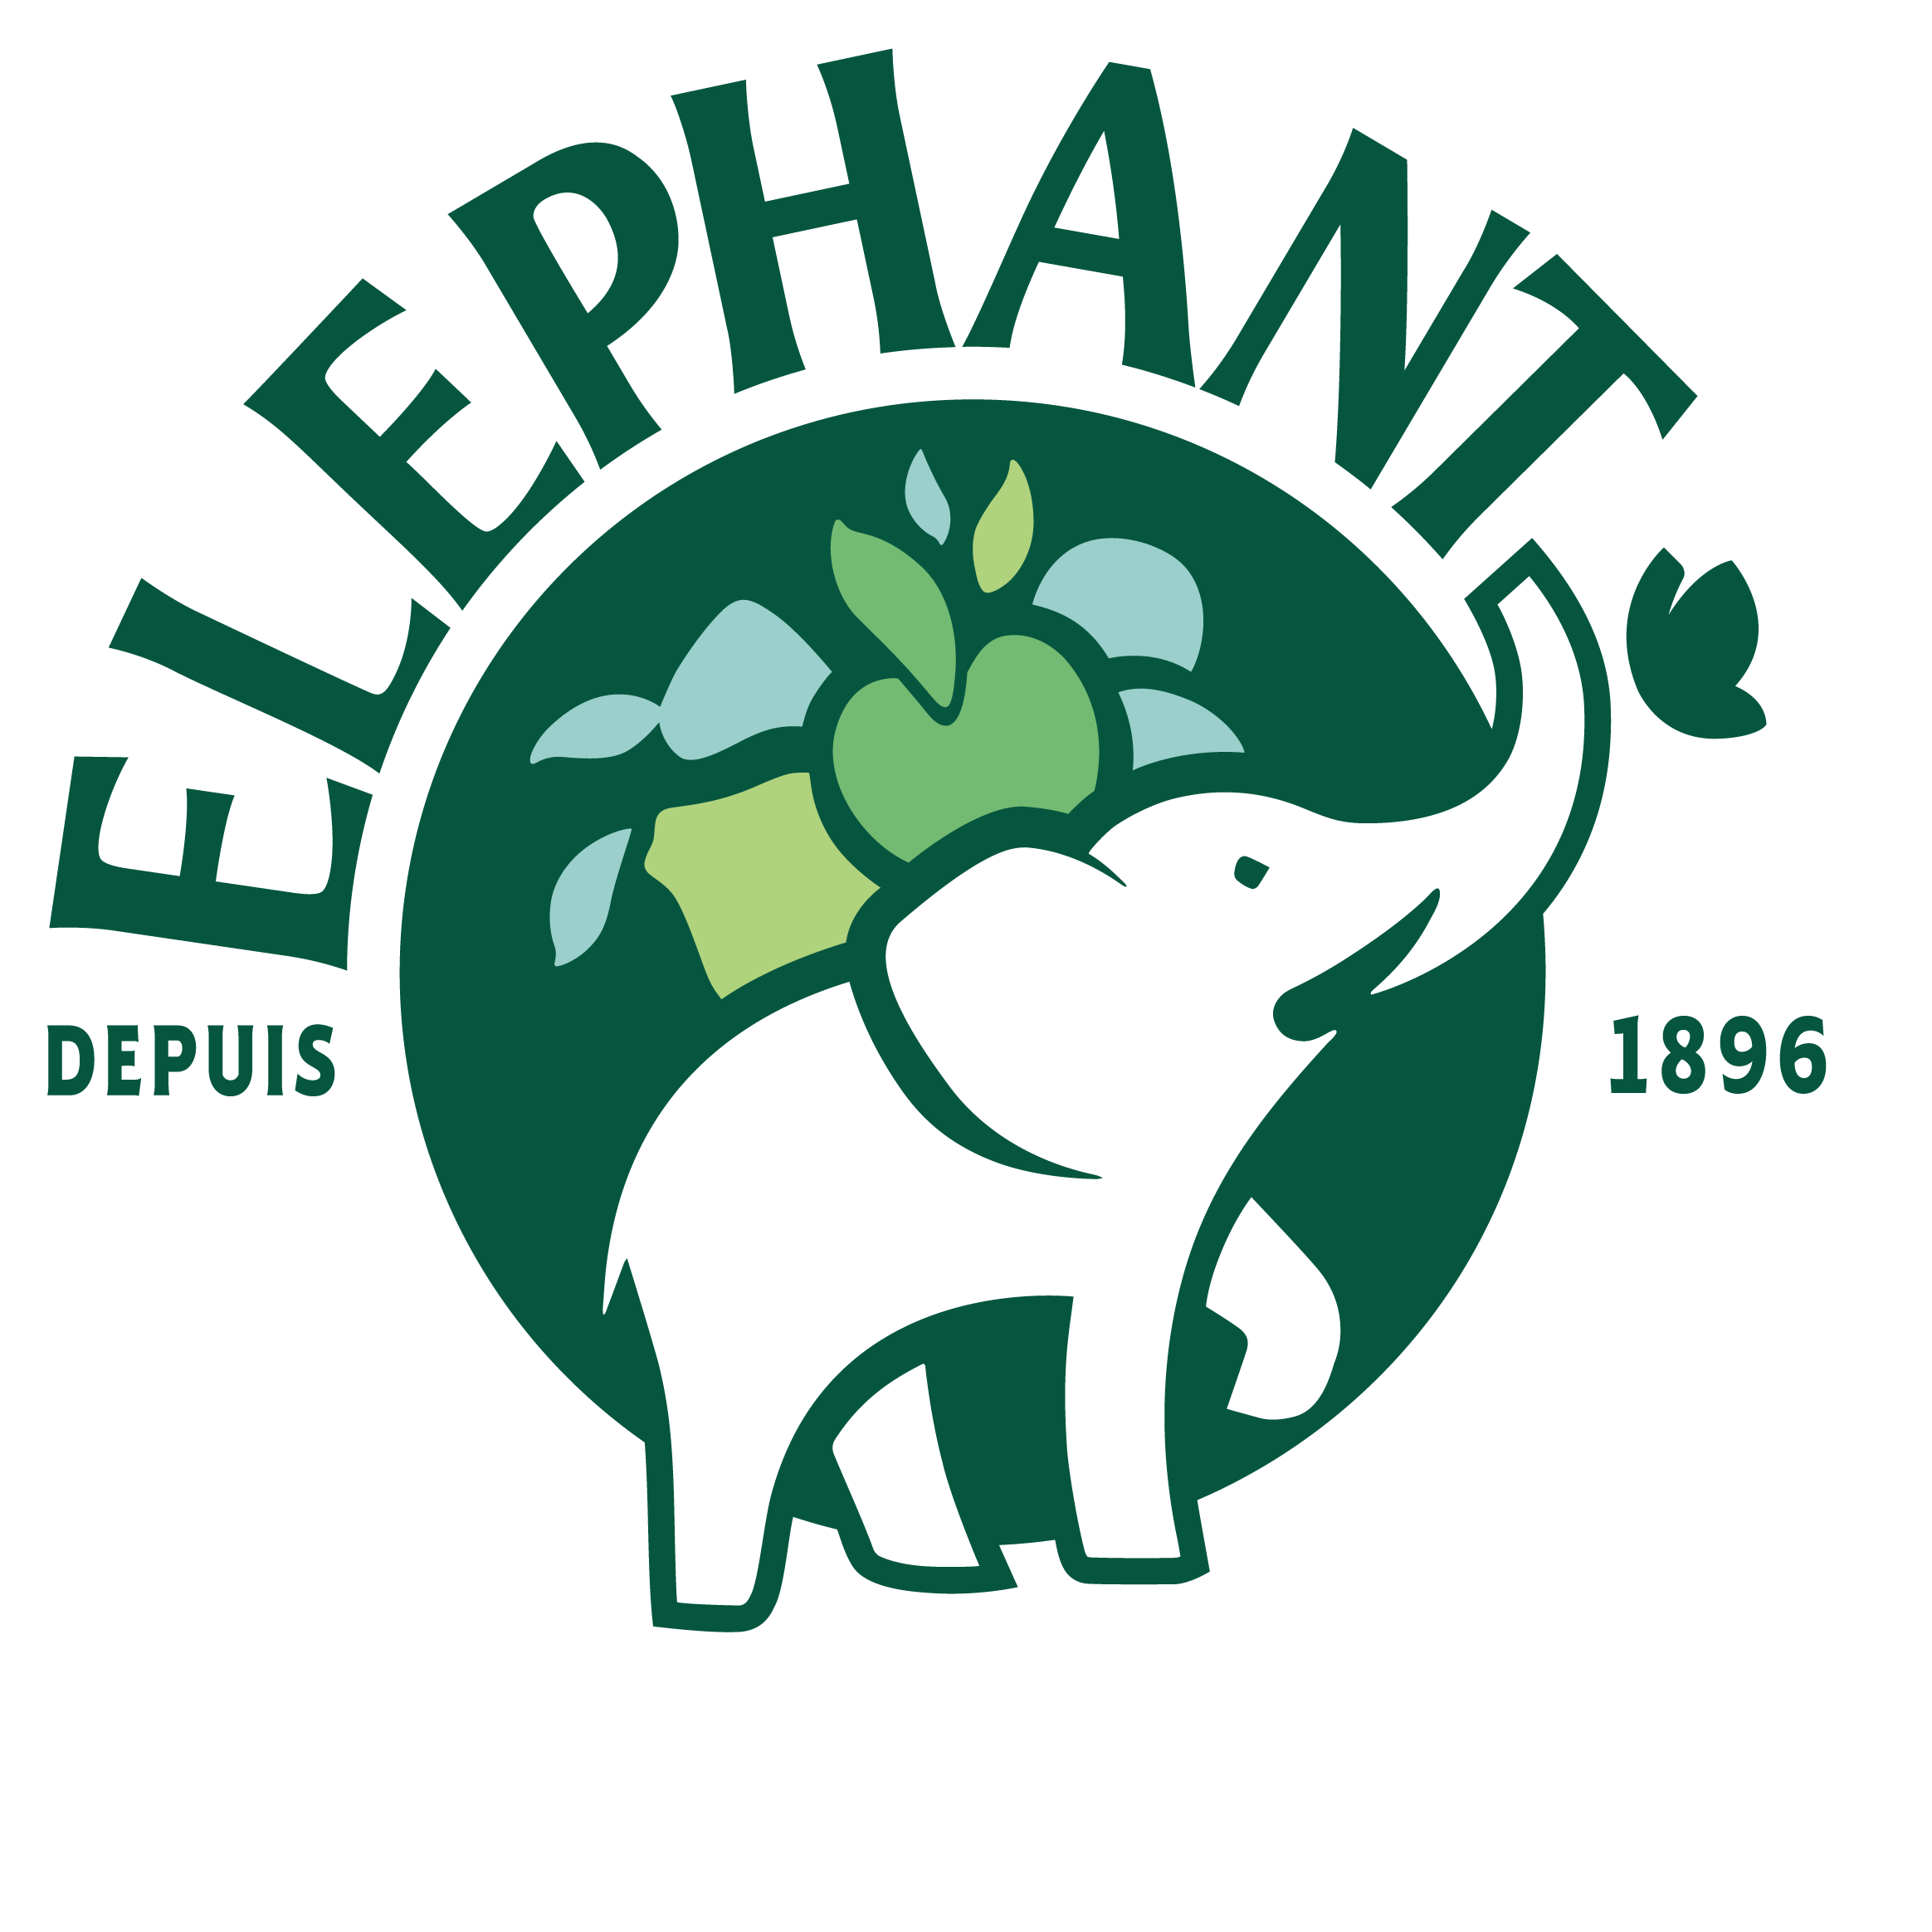 Coffret de 60 sachets d'infusions parfumées Eléphant - Café